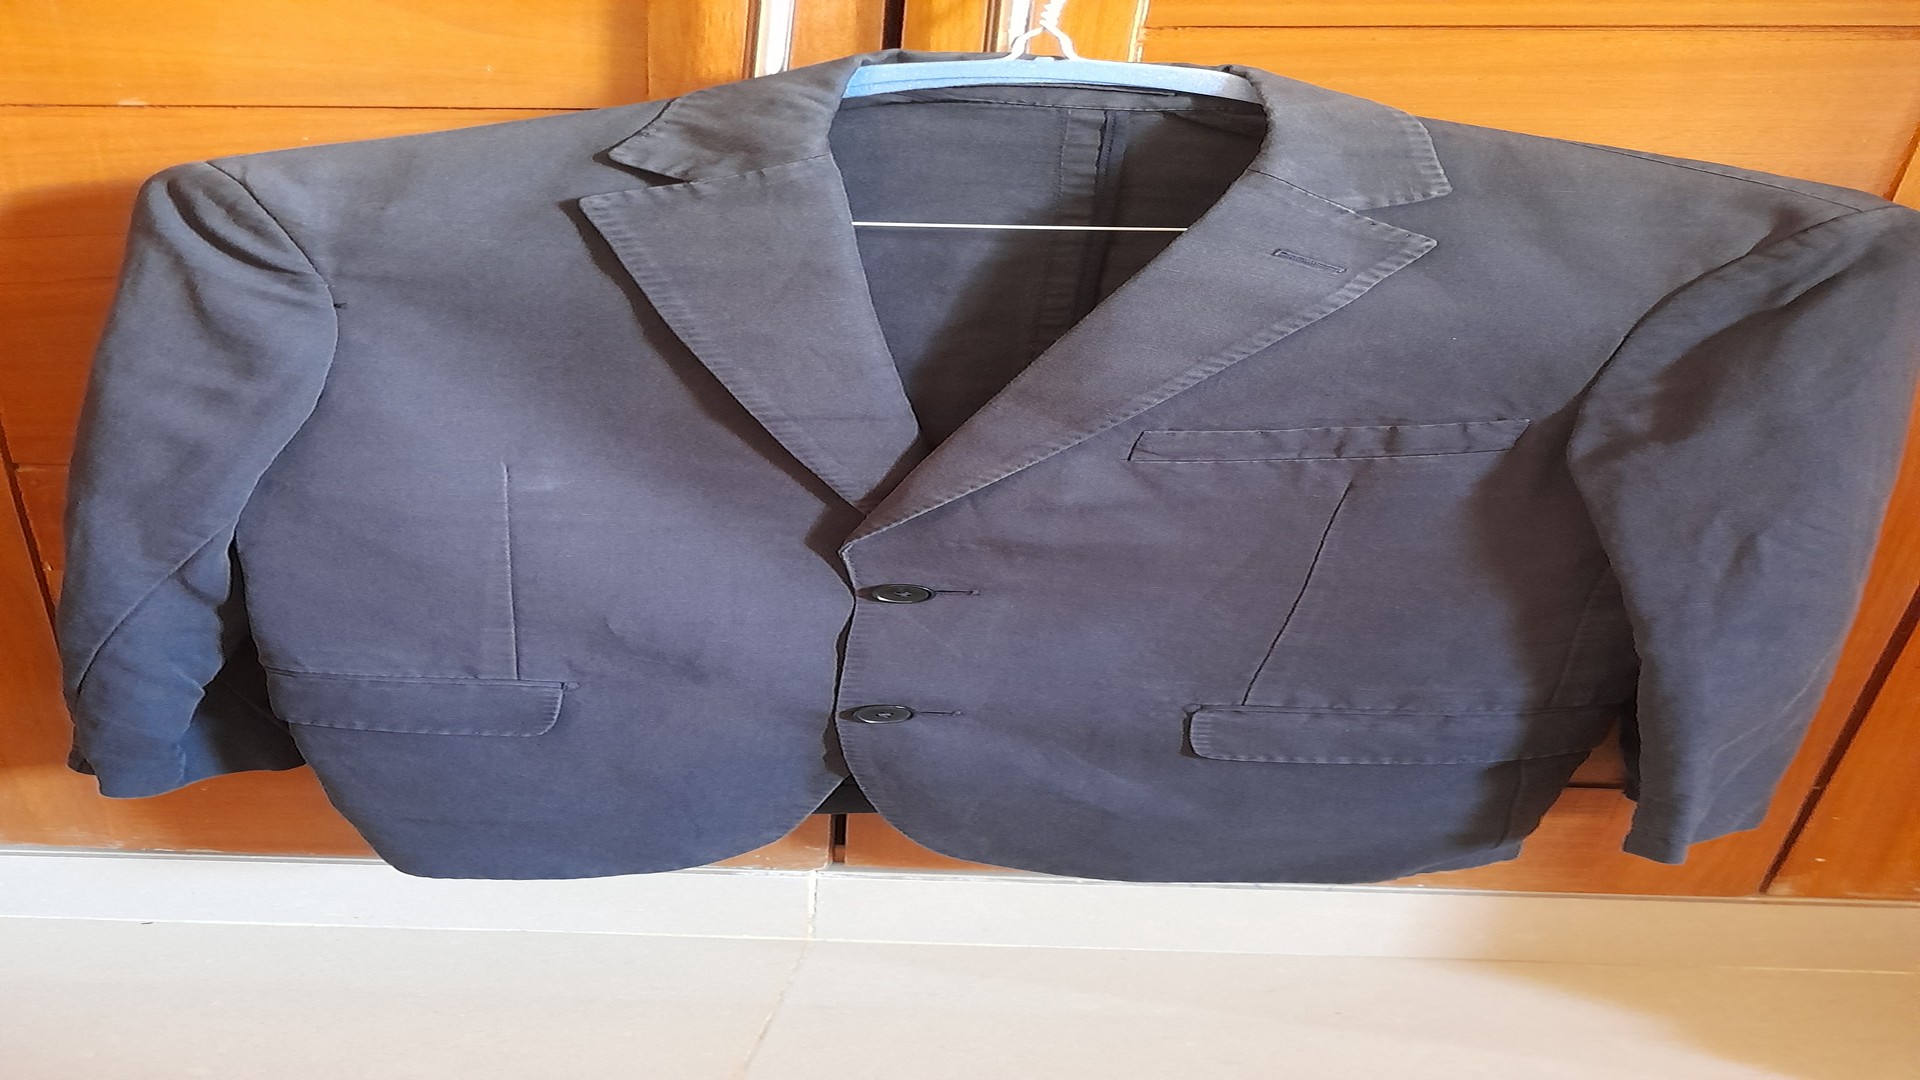 ropa para hombre - Jaqueta/Saco Azul - Talla 48 EUR/38 US
Marca Pedro del Hierro